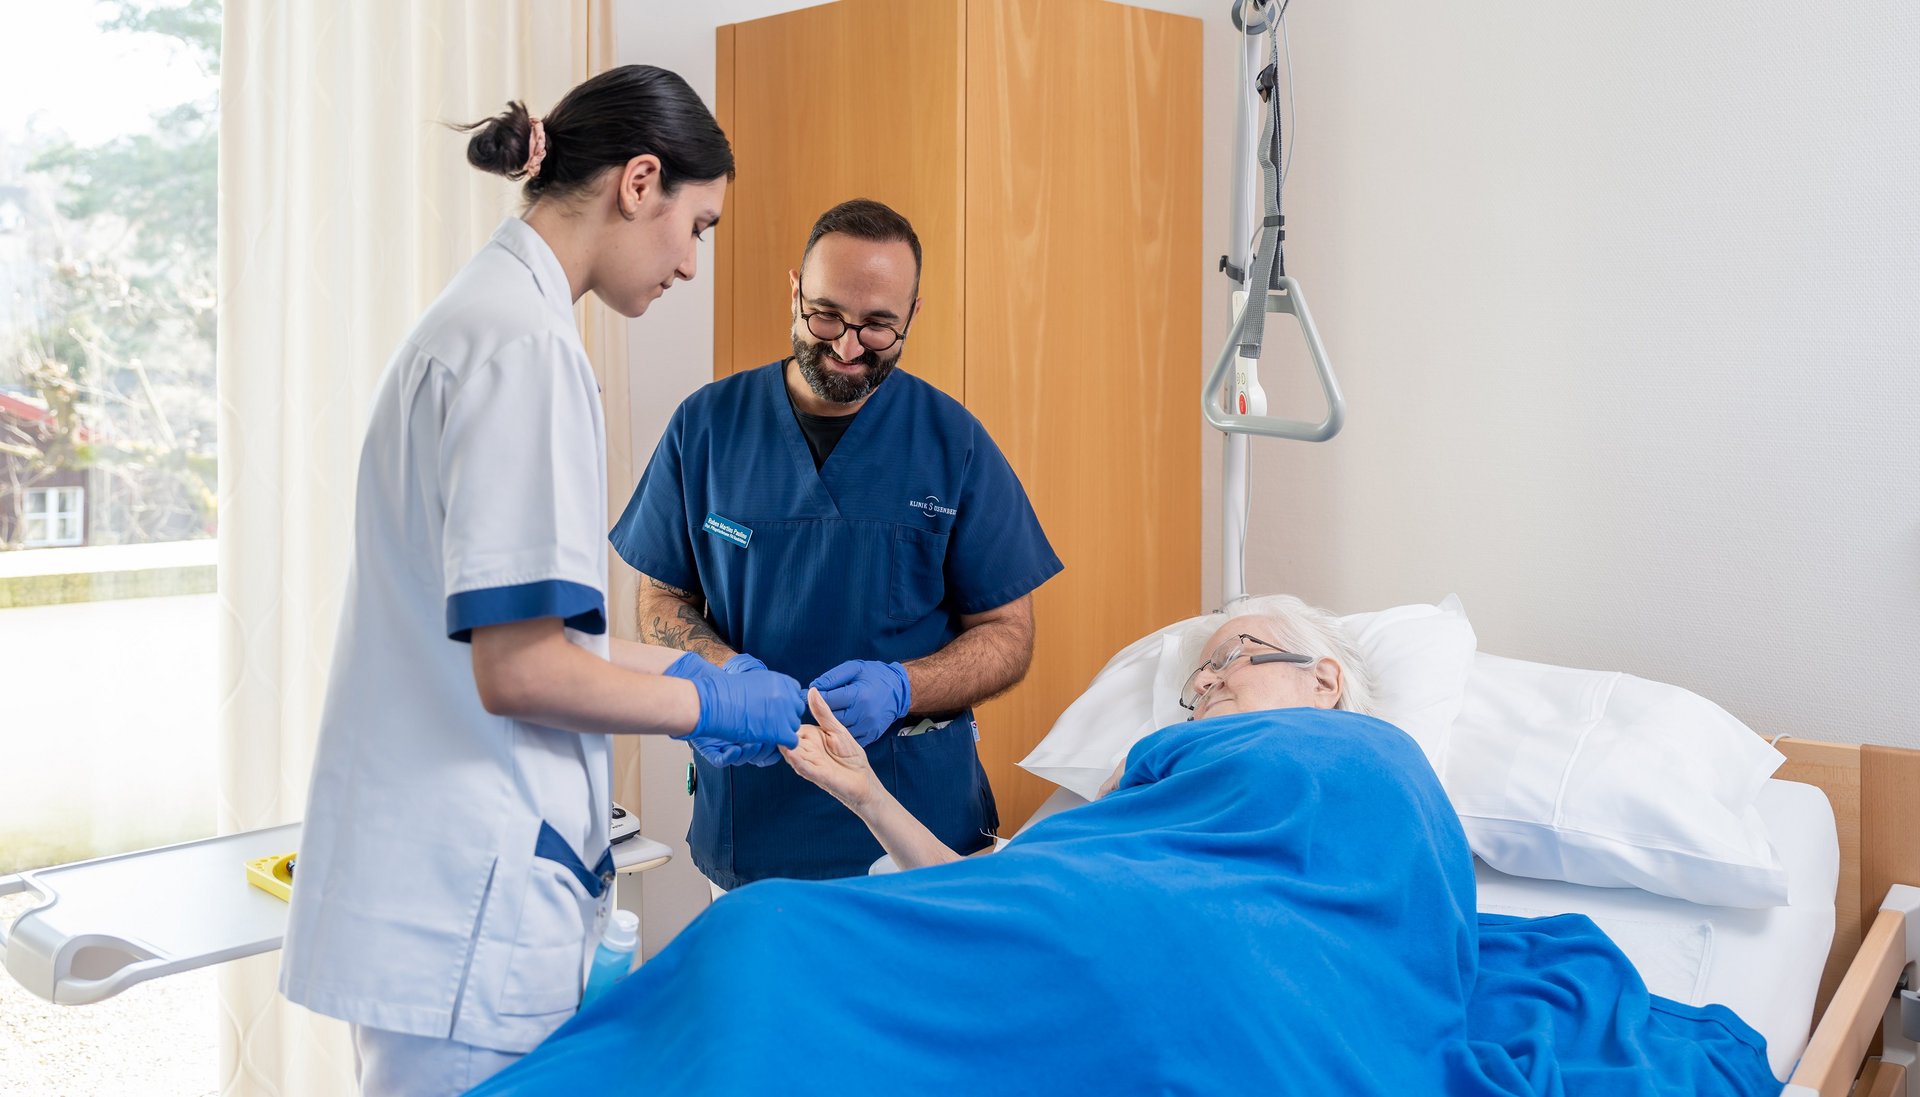 Klinik Susenberg: Pflege am Bett der Patientin